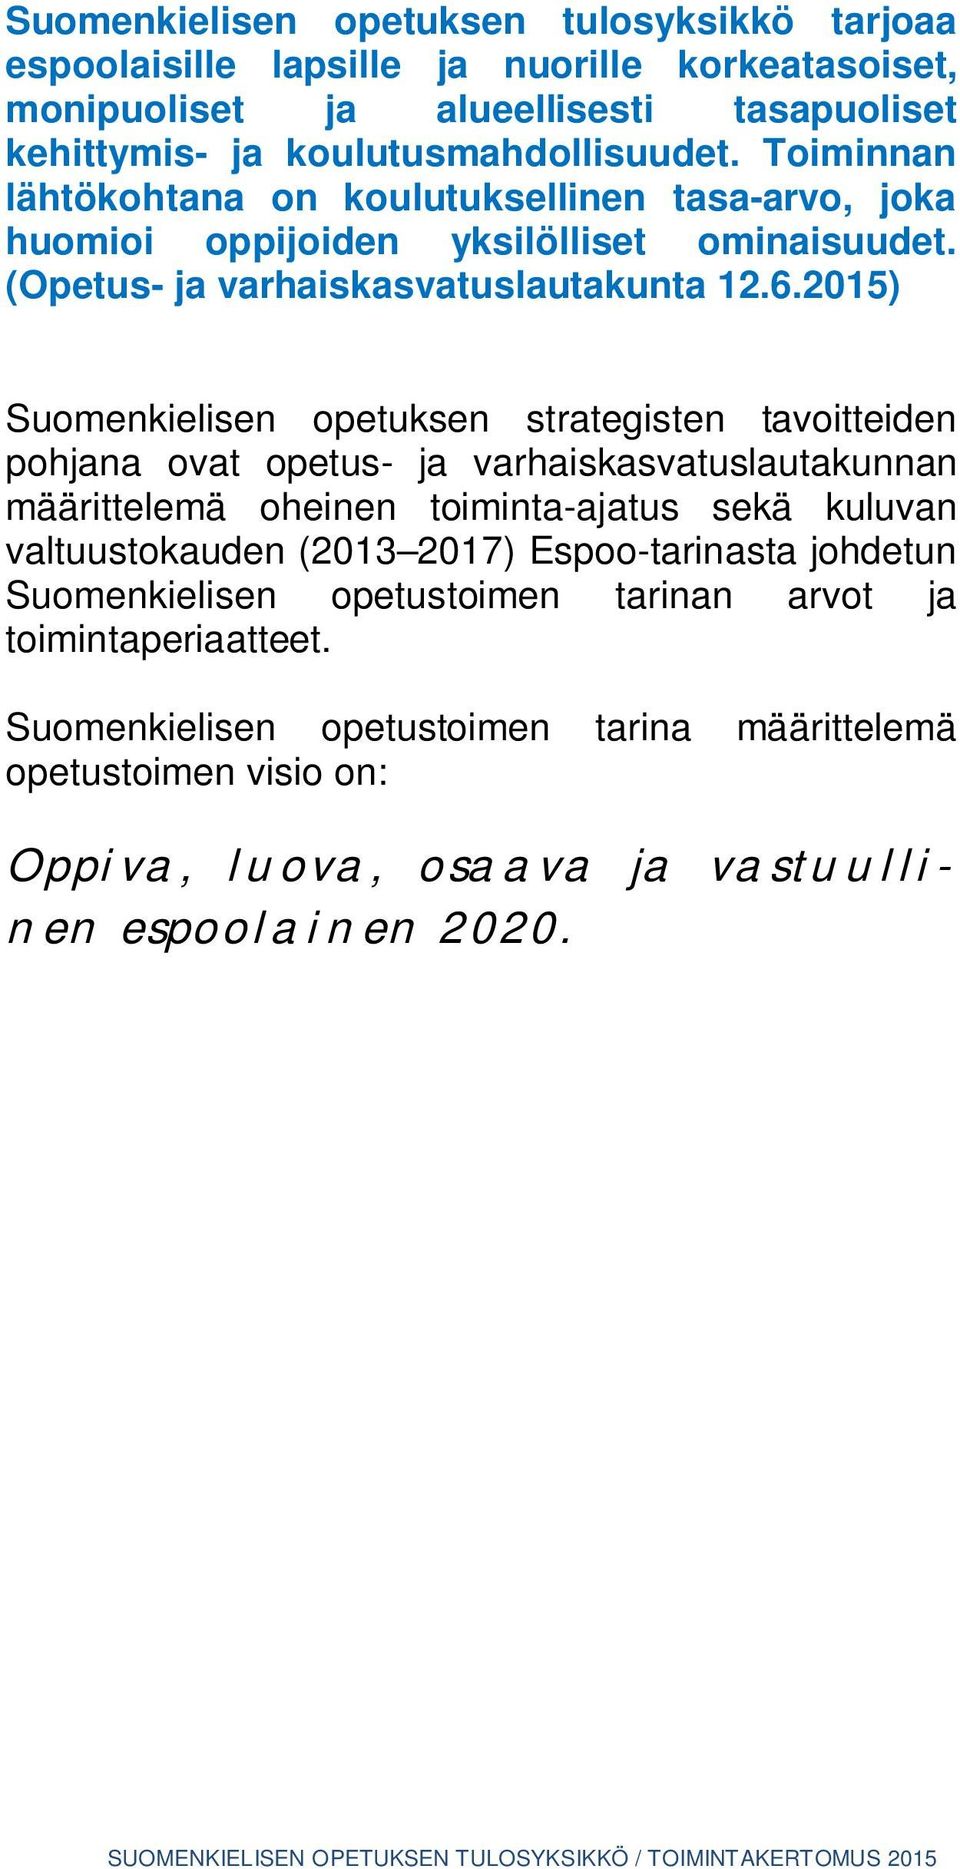 2015) Suomenkielisen opetuksen strategisten tavoitteiden pohjana ovat opetus- ja varhaiskasvatuslautakunnan määrittelemä oheinen toiminta-ajatus sekä kuluvan valtuustokauden (2013